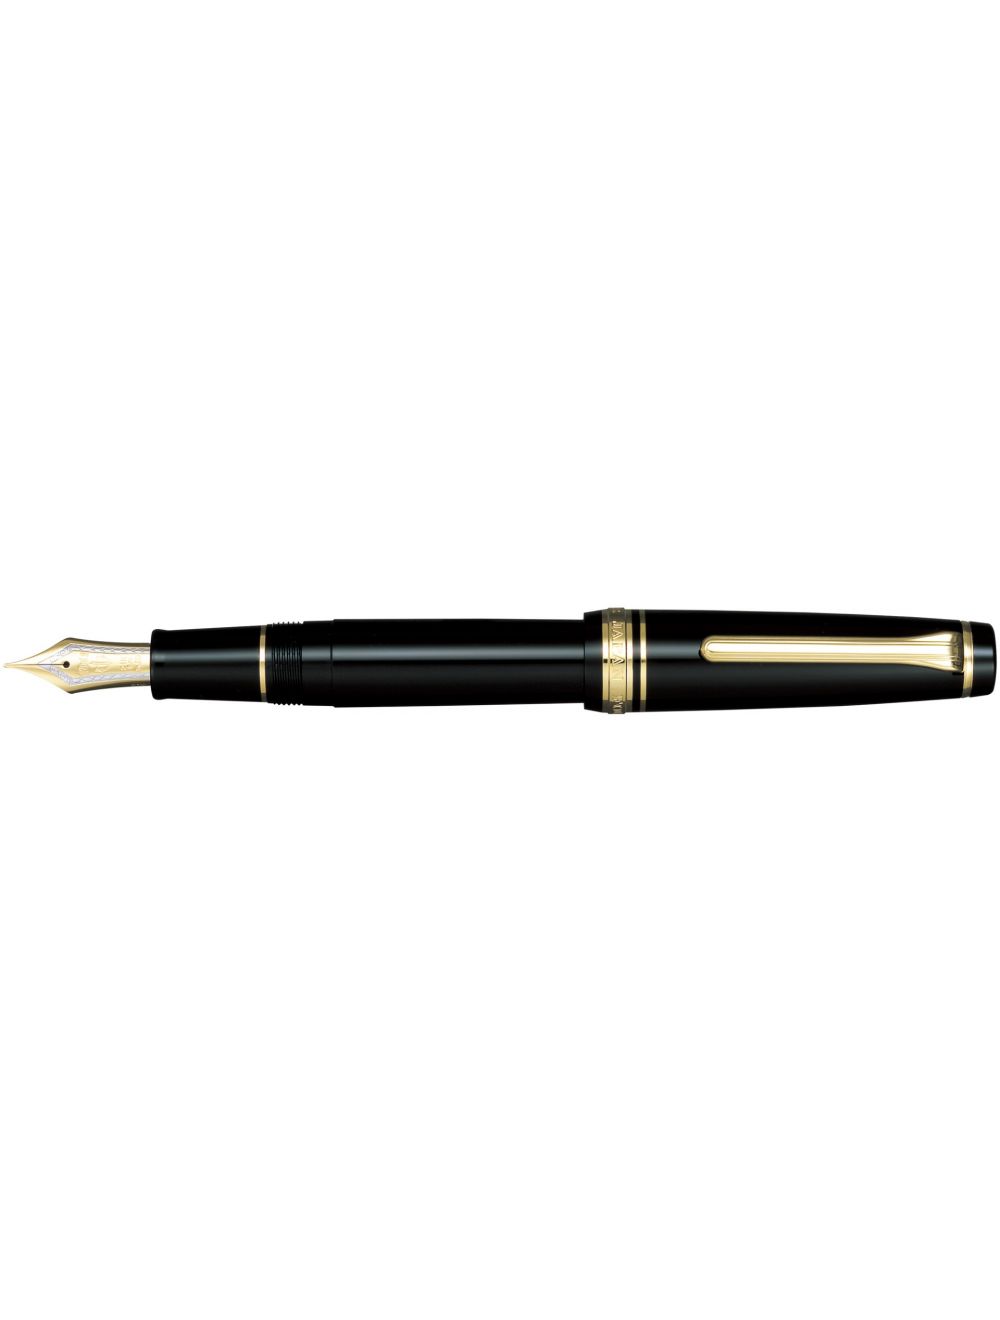 Sailor Professional Gear Vulpen Luxe pen of vulpen kopen en graveren? Merken zoals Parker, Cross, Sheaffer, Visconti